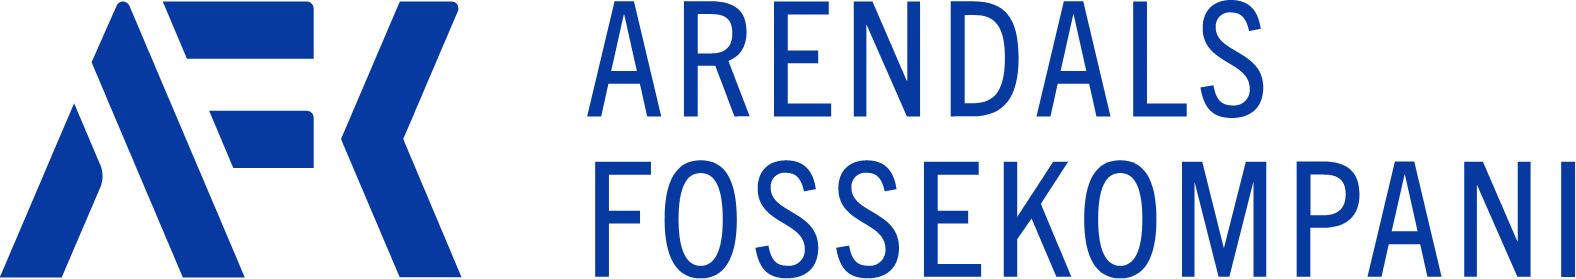 Arendals Fossekompani logo large (transparent PNG)